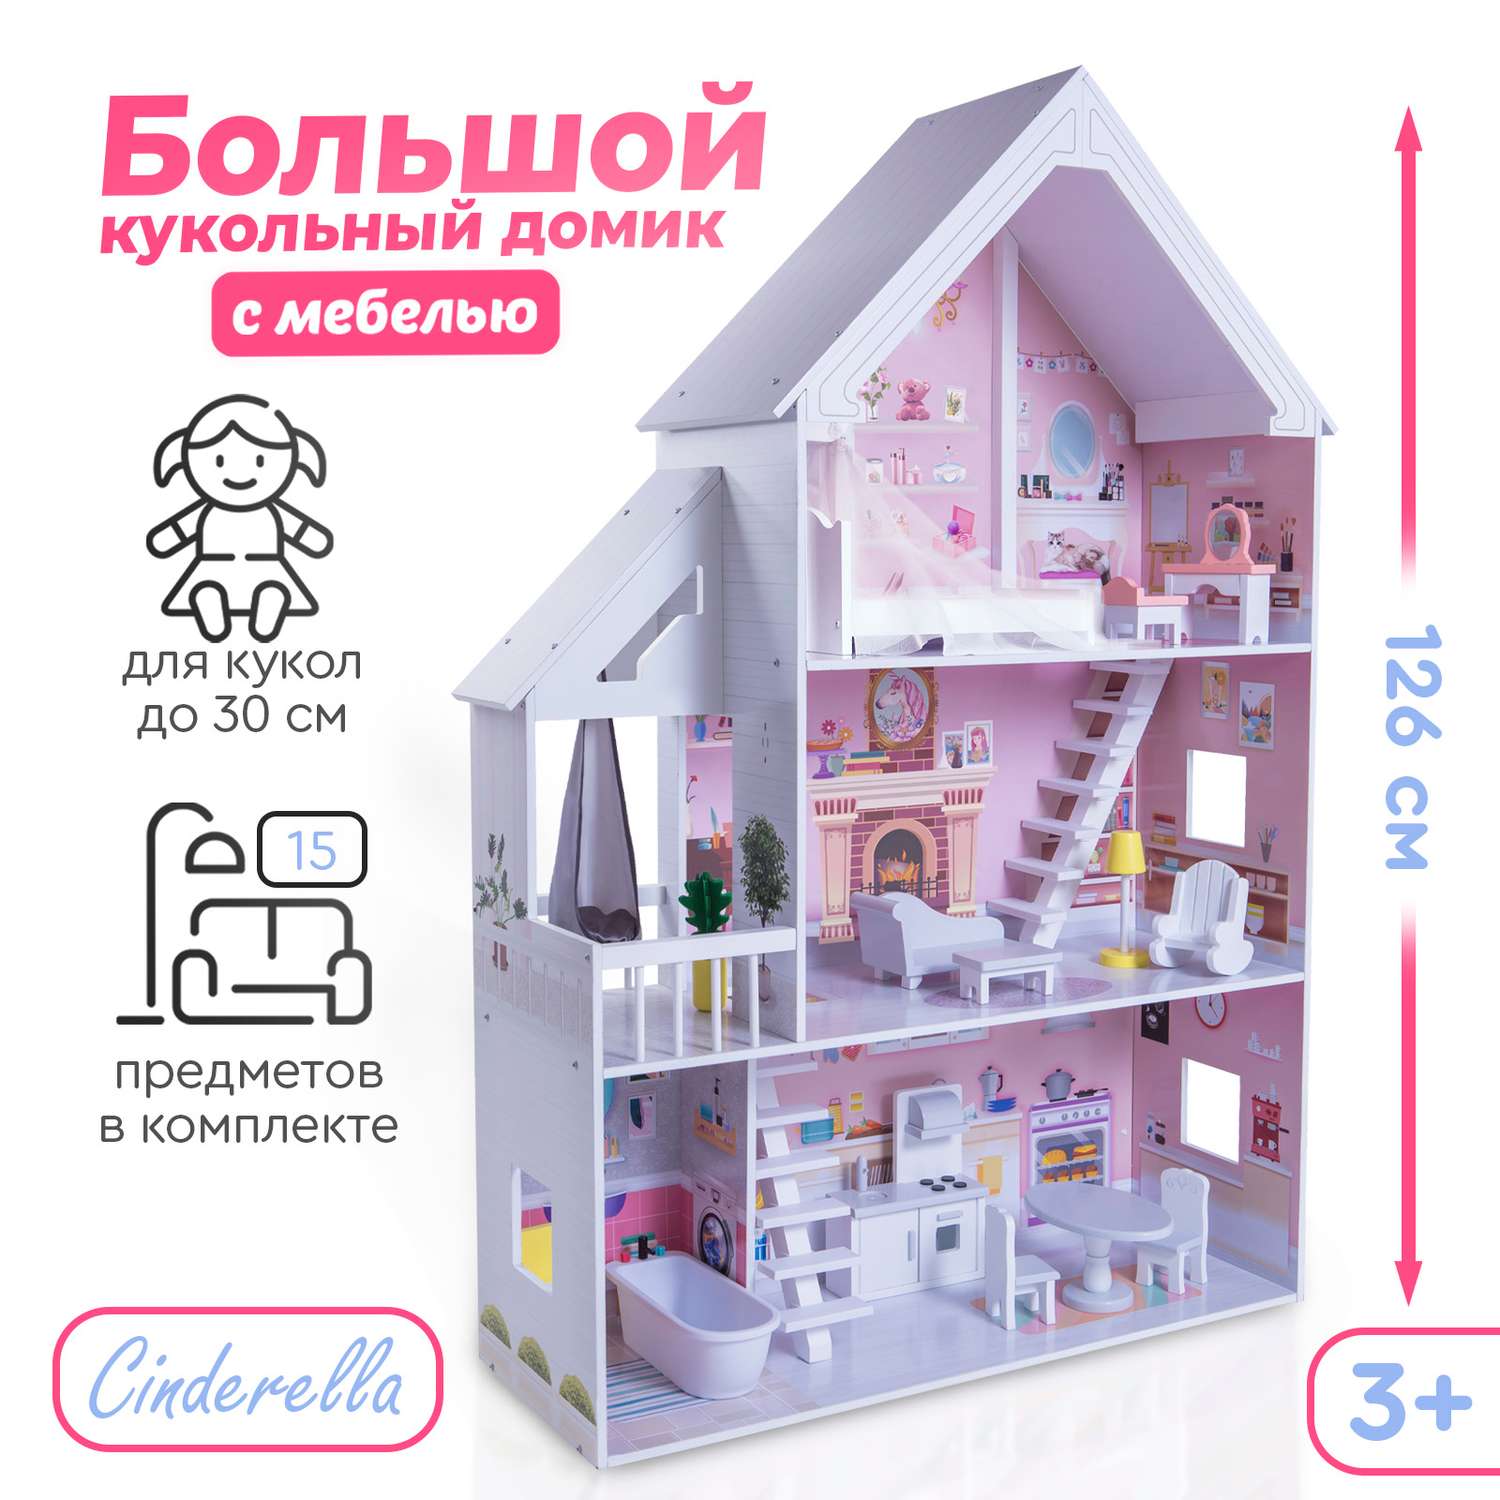 Кукольный домик Tomix Cinderella 4127 - фото 2